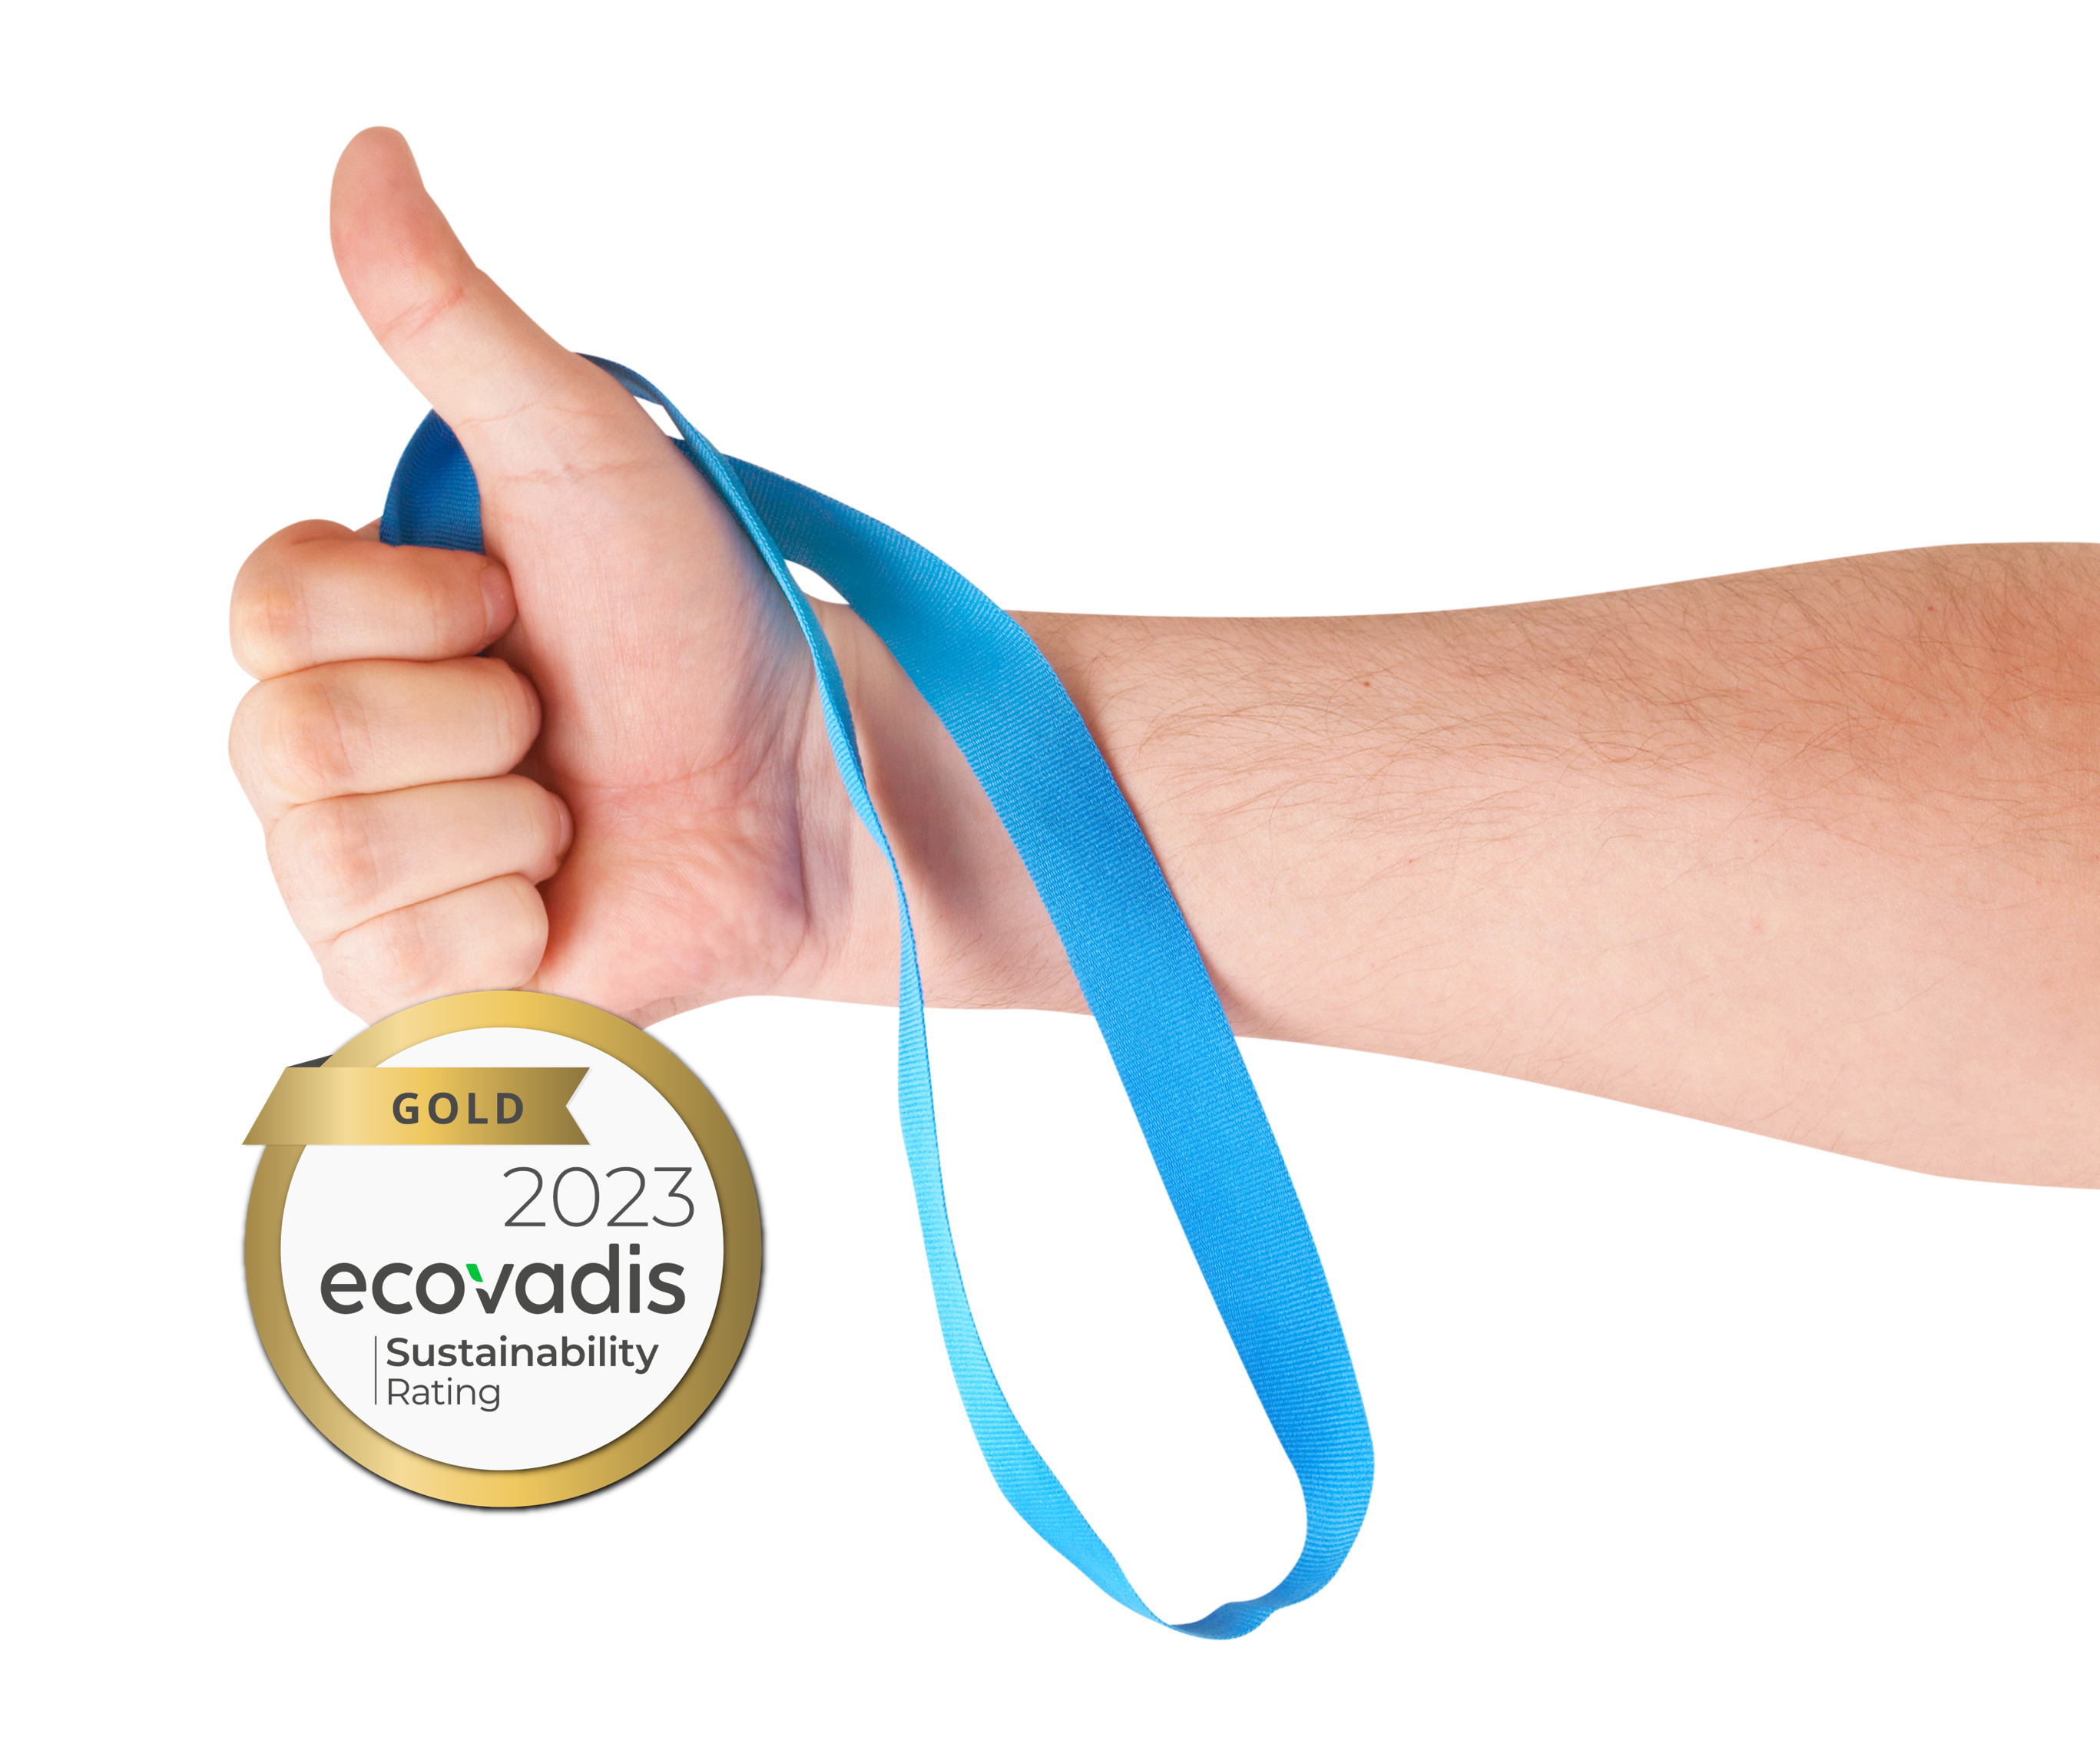 BAP Pharma awarded Gold EcoVadis Sustainability Rating